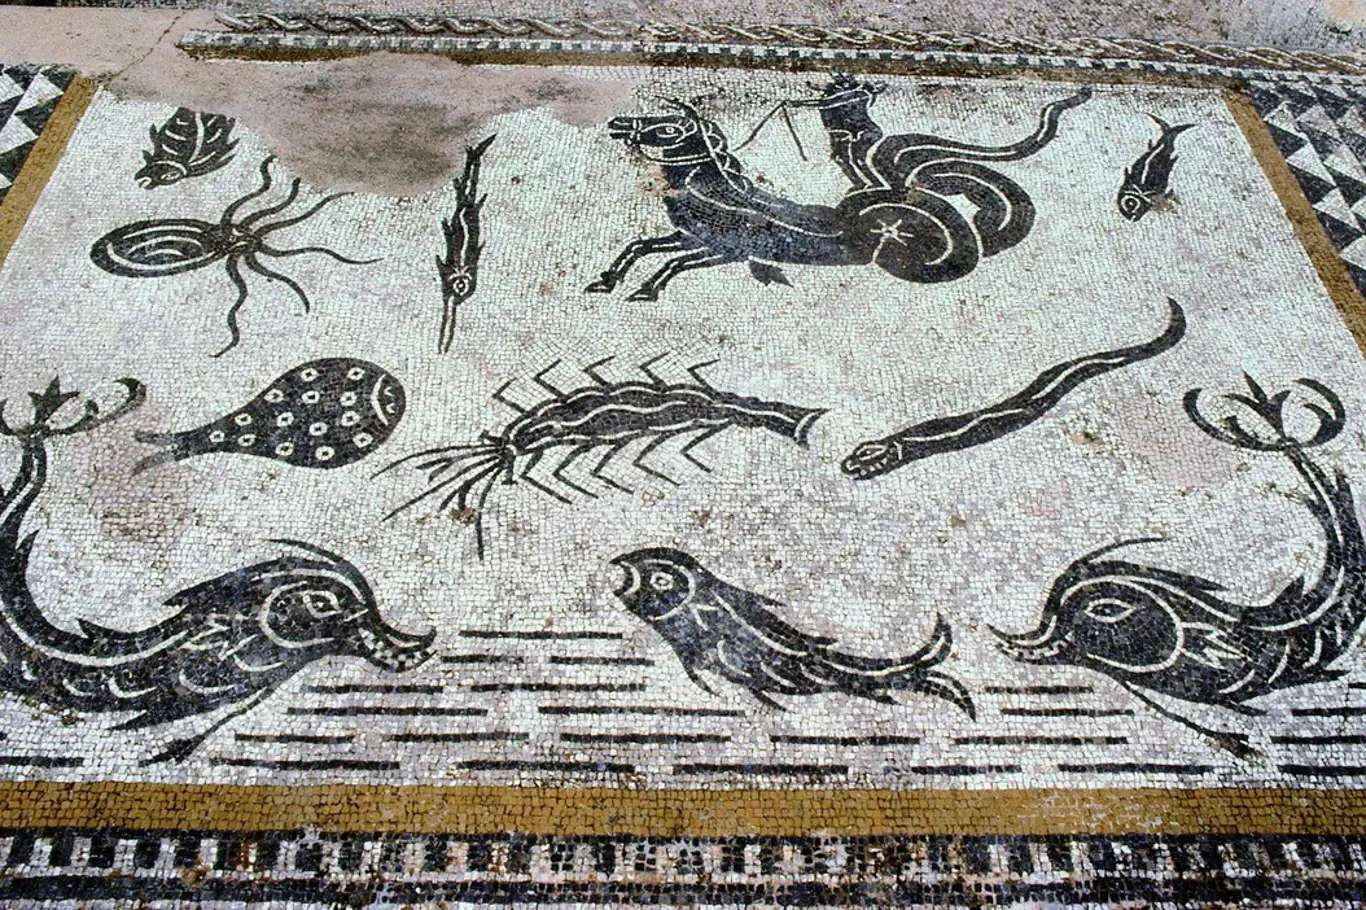 Mozaika z Caligulovy "lodi rozkoše“ skutečně patřila Caligulovi. Zobrazuje různé mořské tvory, včetně ryb, krabů a chobotnic, a složité geometrické a květinové vzory. Velmi kontroverzní římský císař vládl krátce a byl zavražděn.